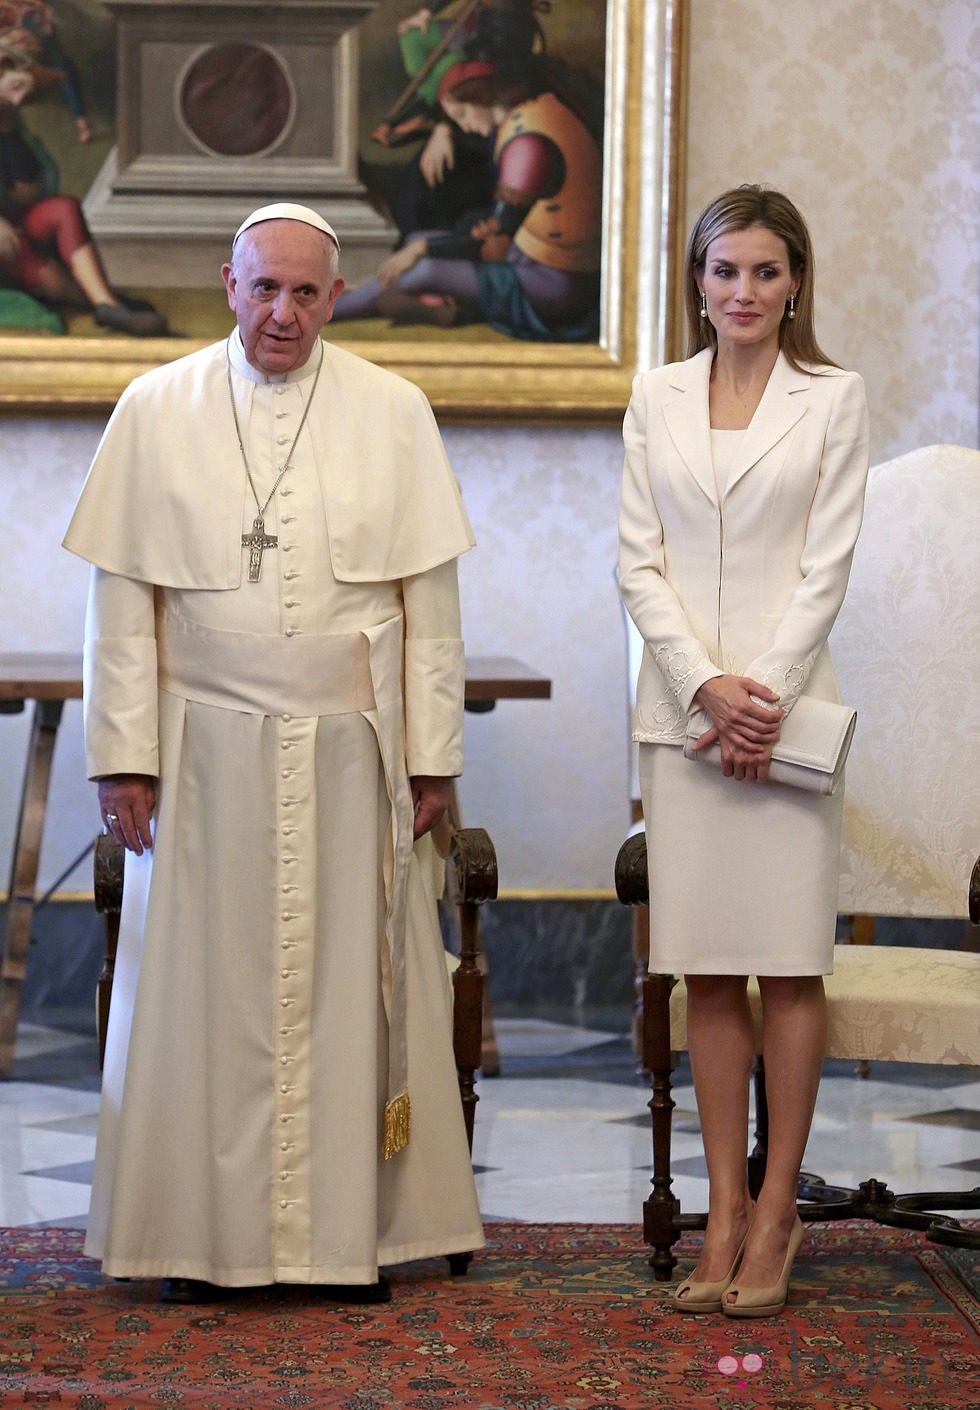 La Reina Letizia con un traje blanco junto al Papa Francisco